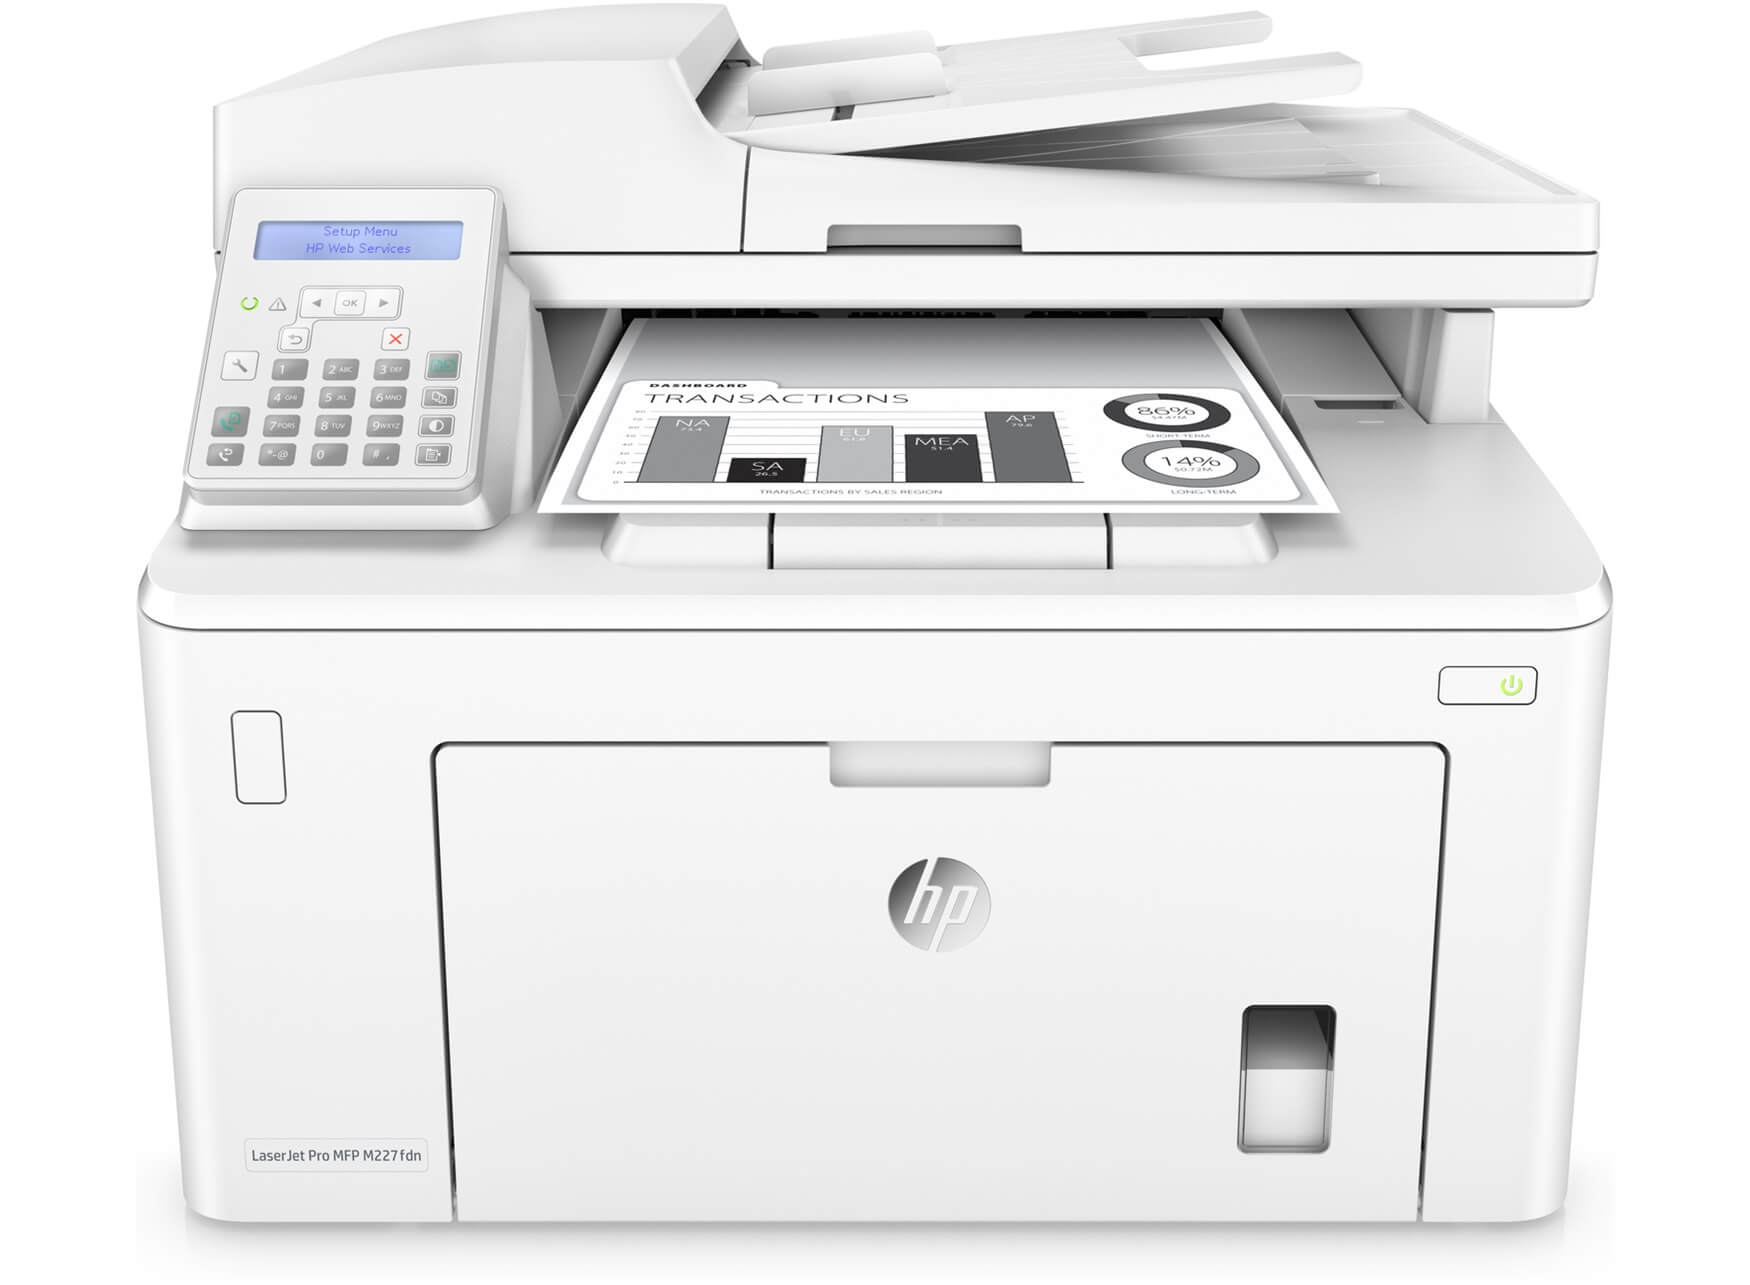 Máy in HP LaserJet Pro M227fdn (In đảo mặt/ Copy/ Scan/ Fax + LAN)